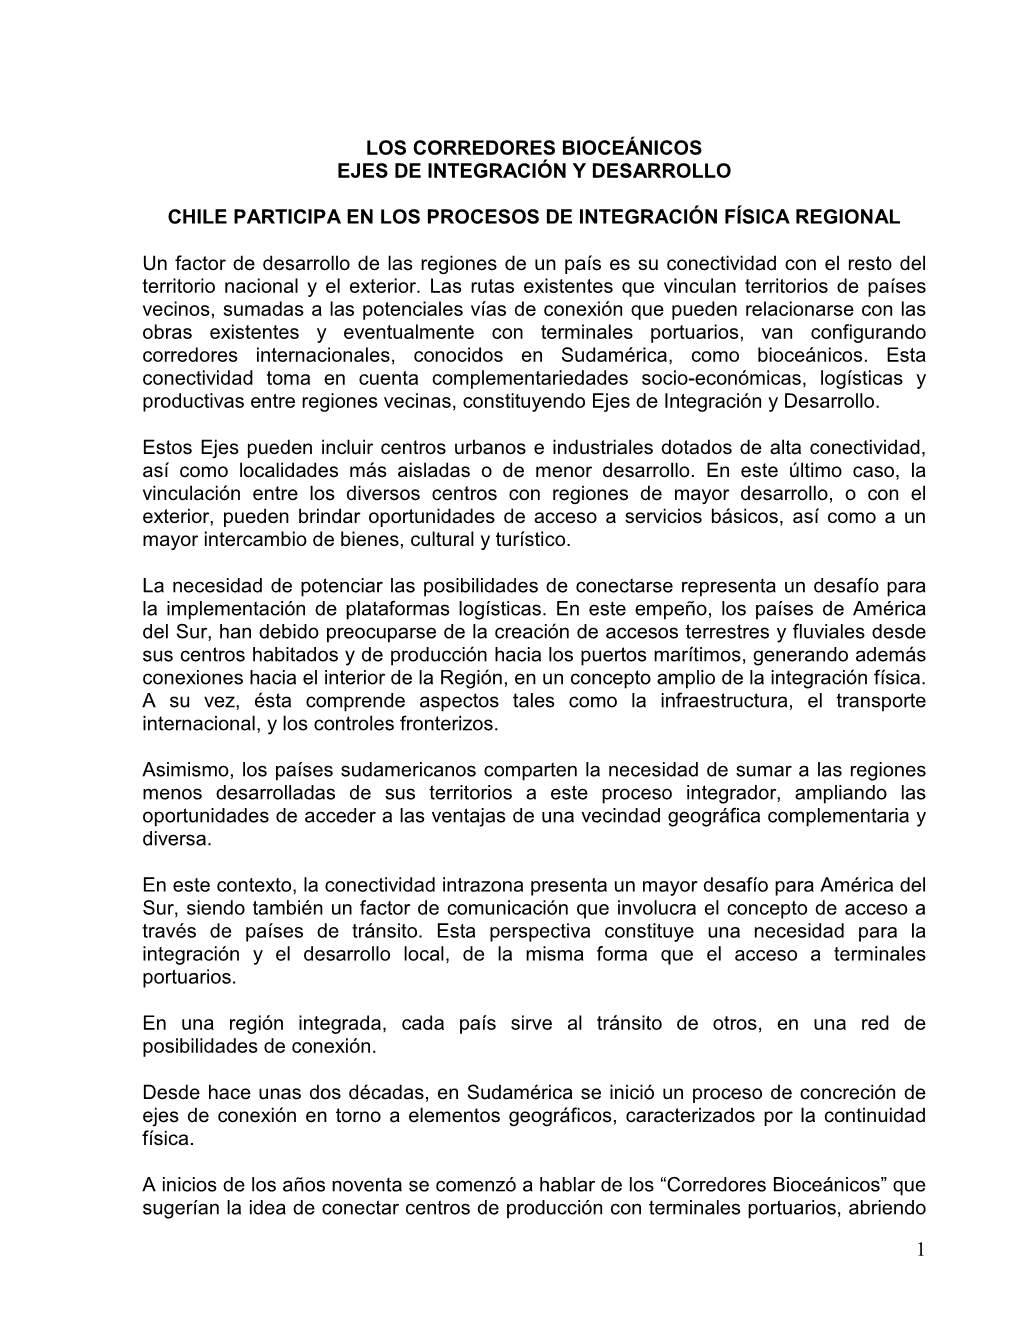 Chile Participa En Los Procesos De Integración Física Regional